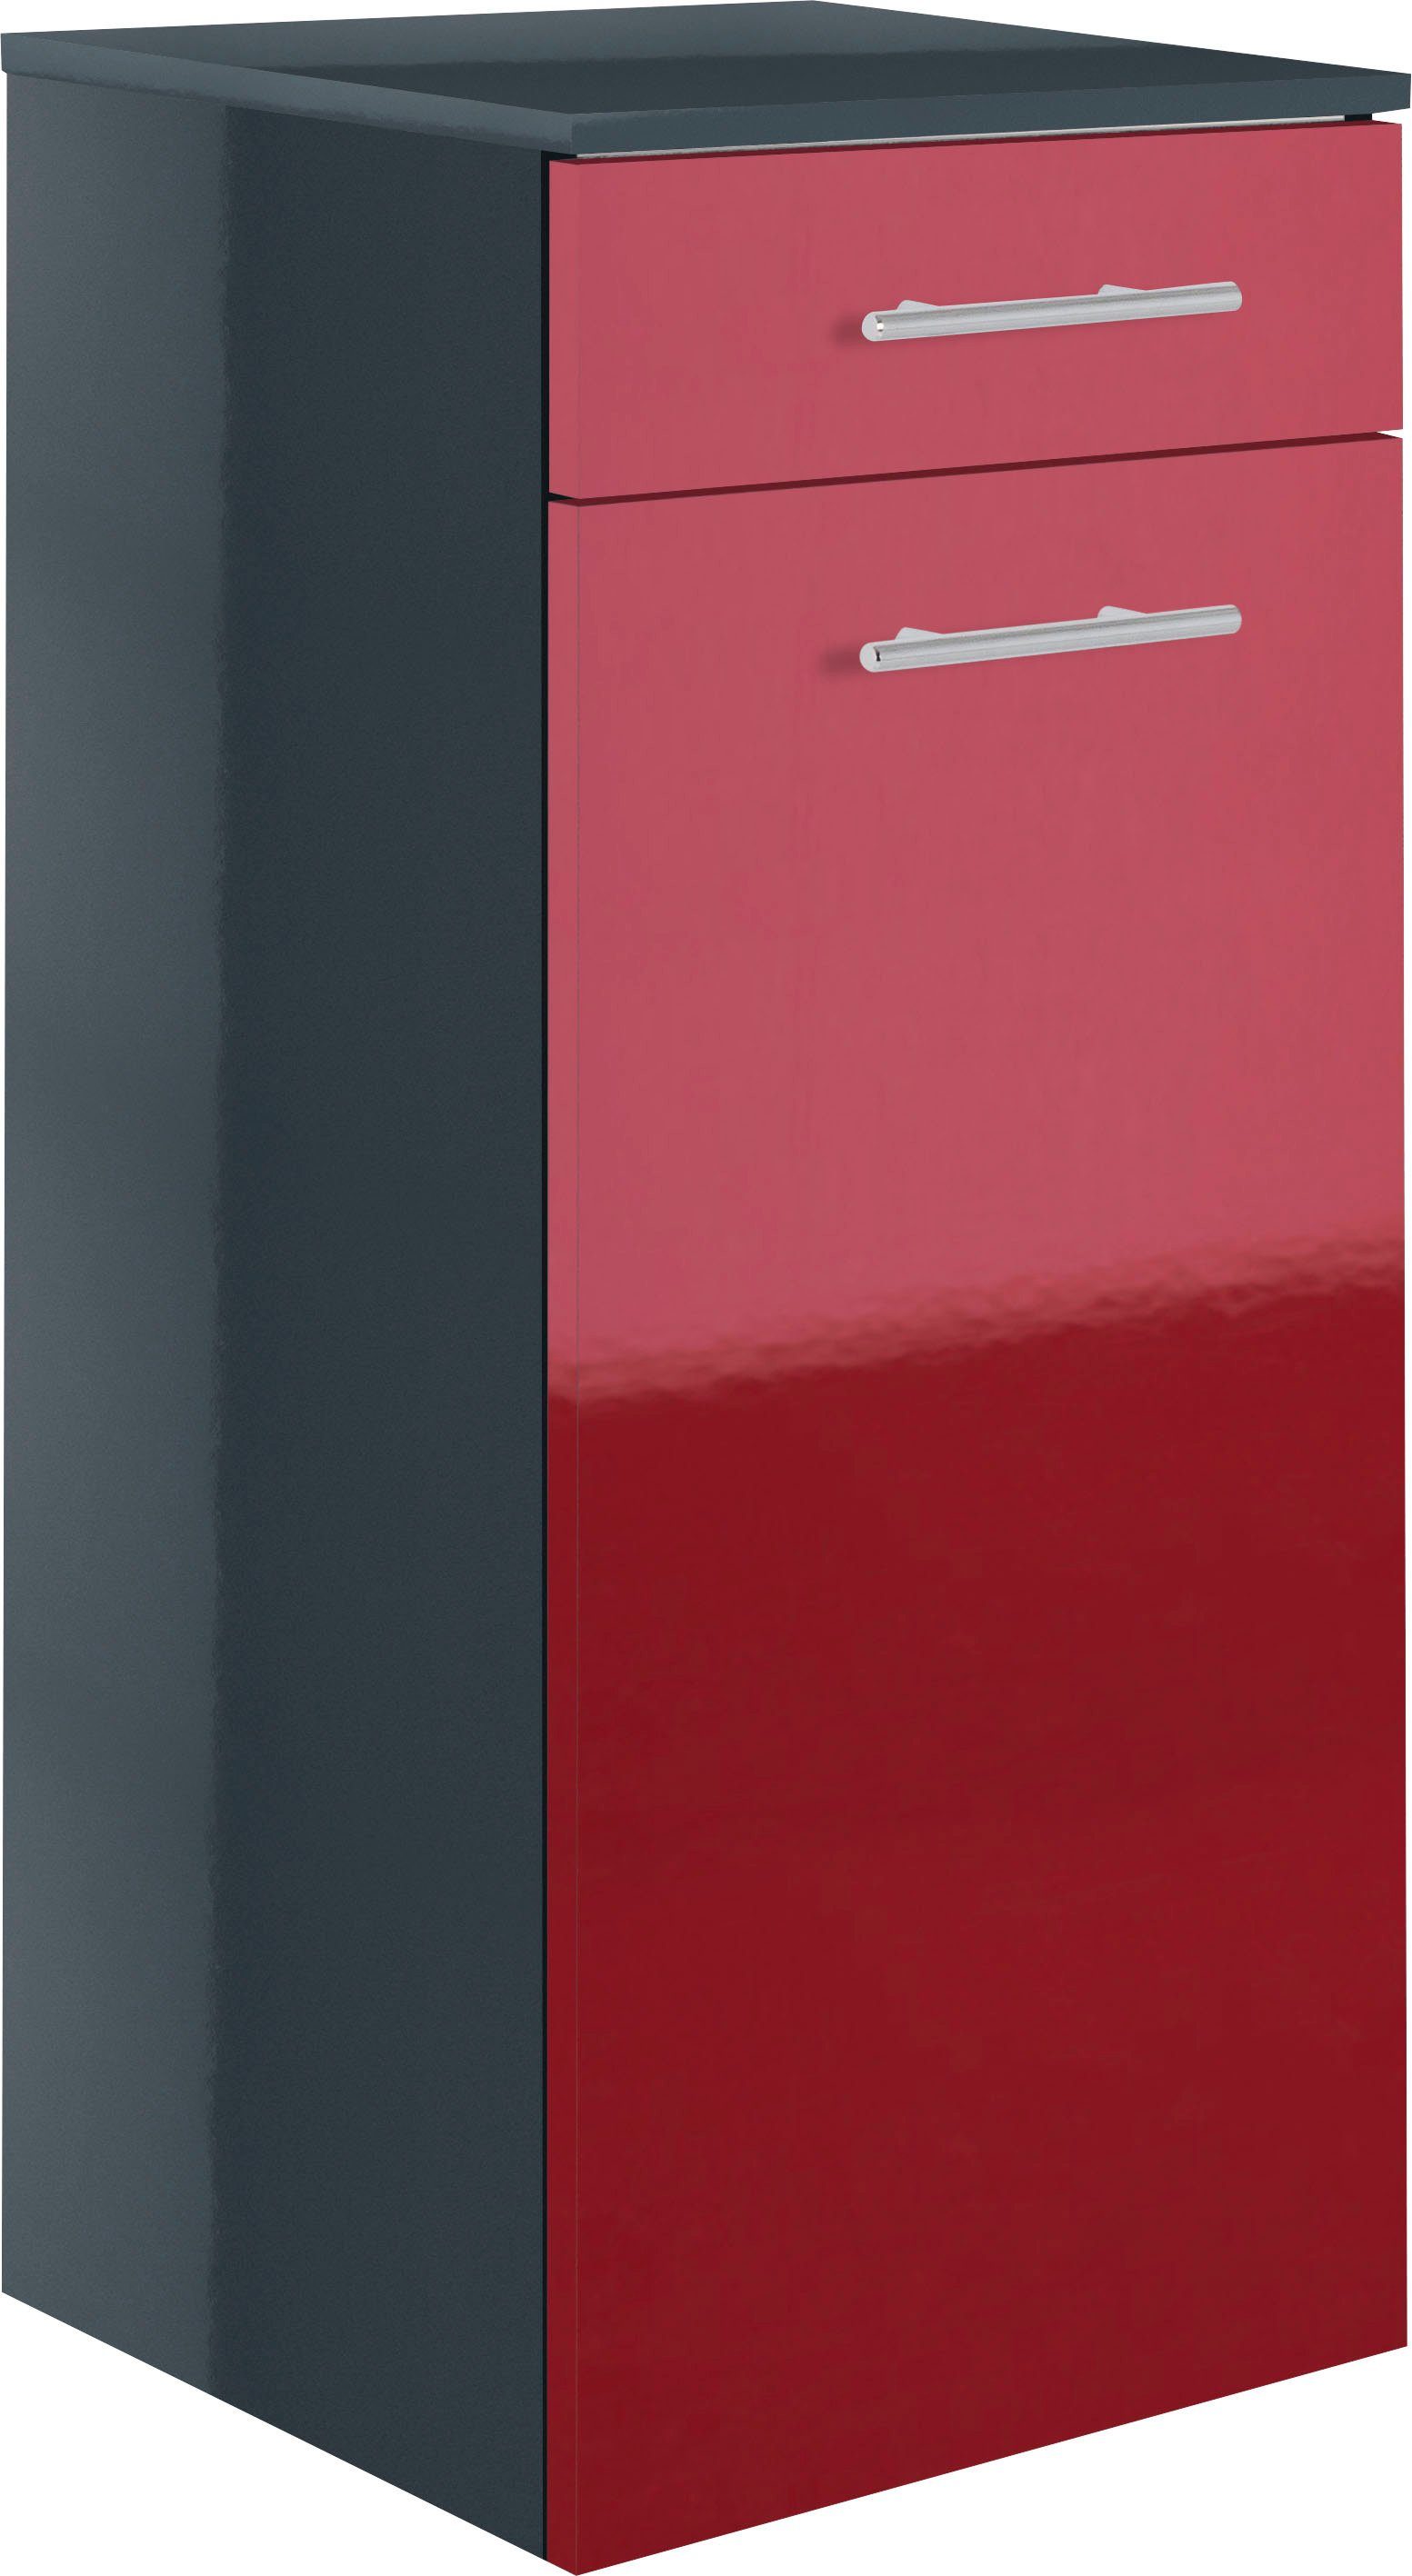 40 cm Midischrank Breite | MARLIN 3040, anthrazit rot